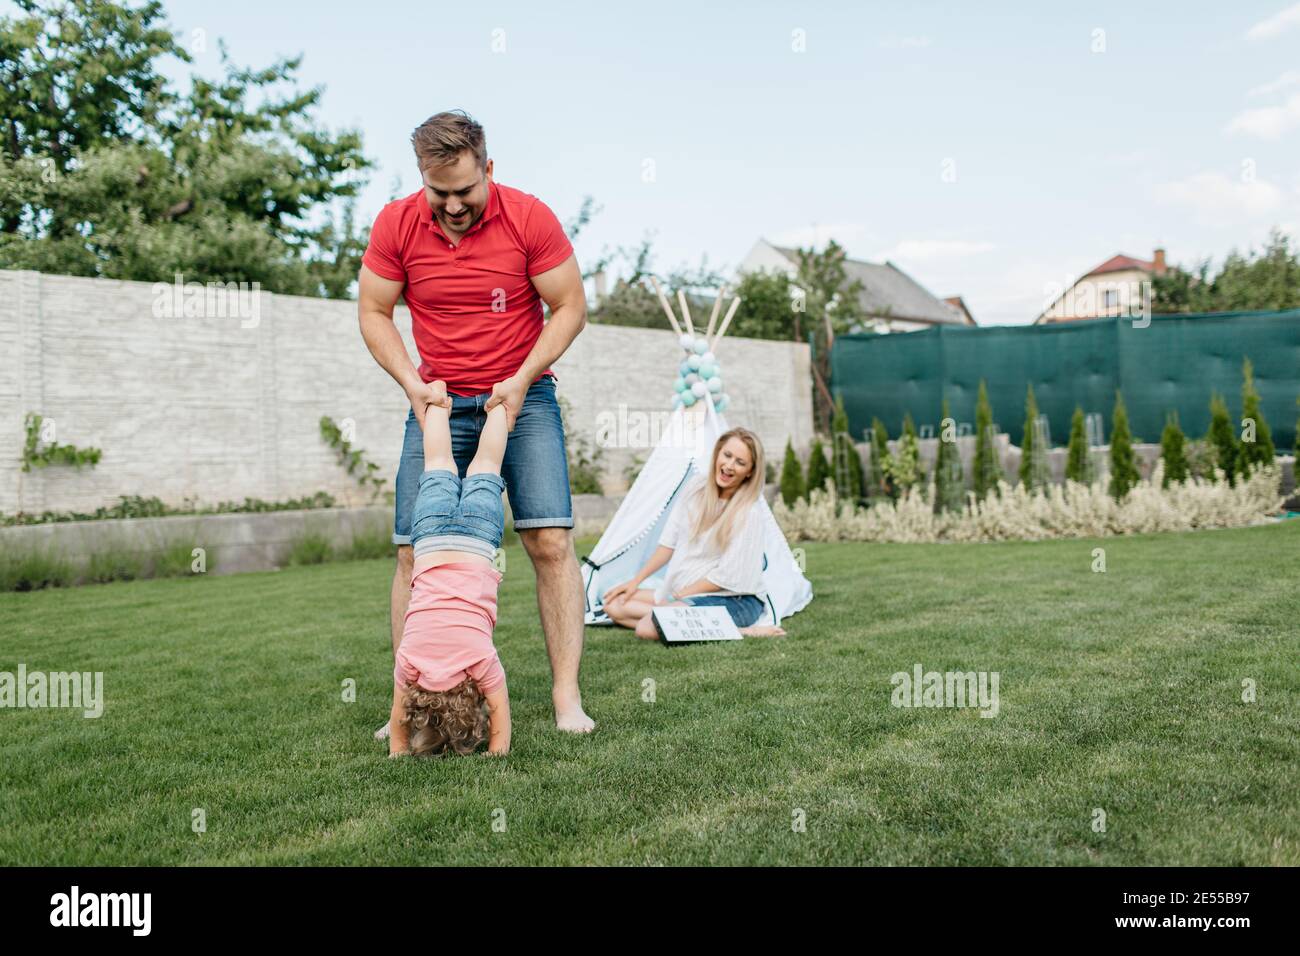 Glückliche Familie verbringen Zeit zusammen draußen im Garten. Kind, das Spaß mit seinen Eltern hat und mit einem Vater auf dem Rasen spielt. Stockfoto